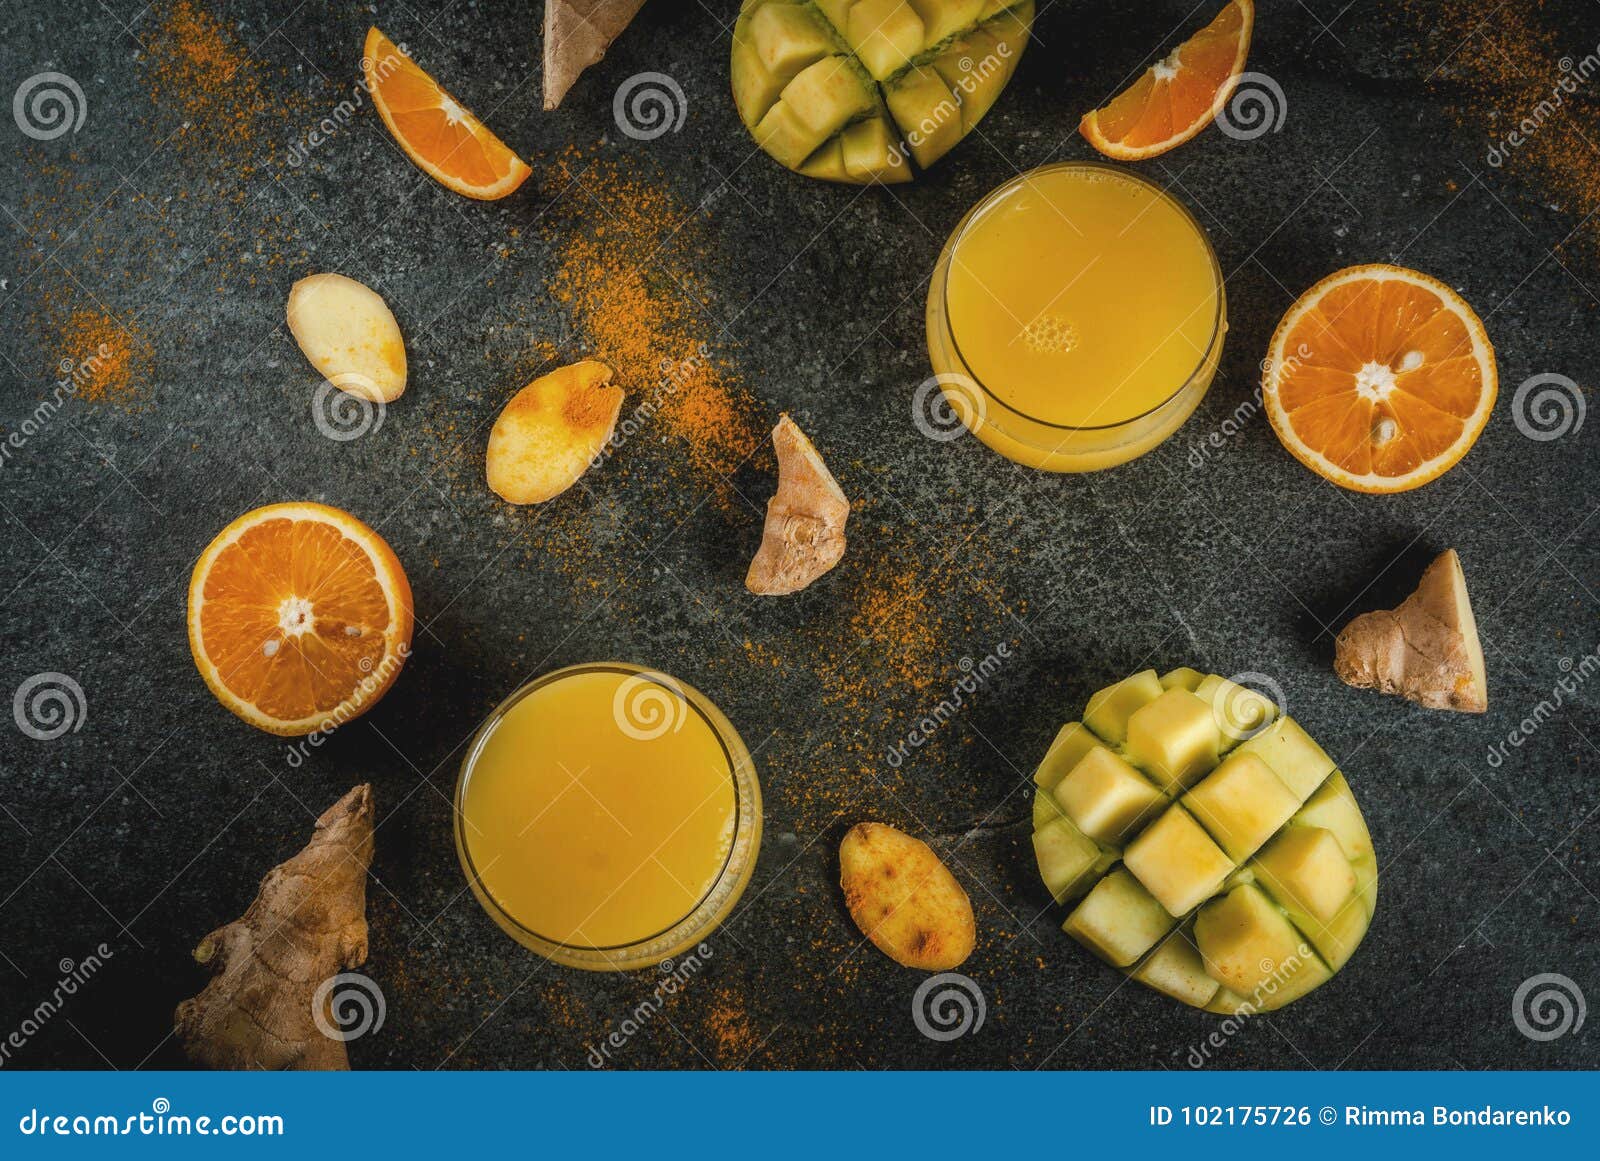 Mango, Orange, Turmeric and Ginger Smoothie Stock Photo - Image of food ...